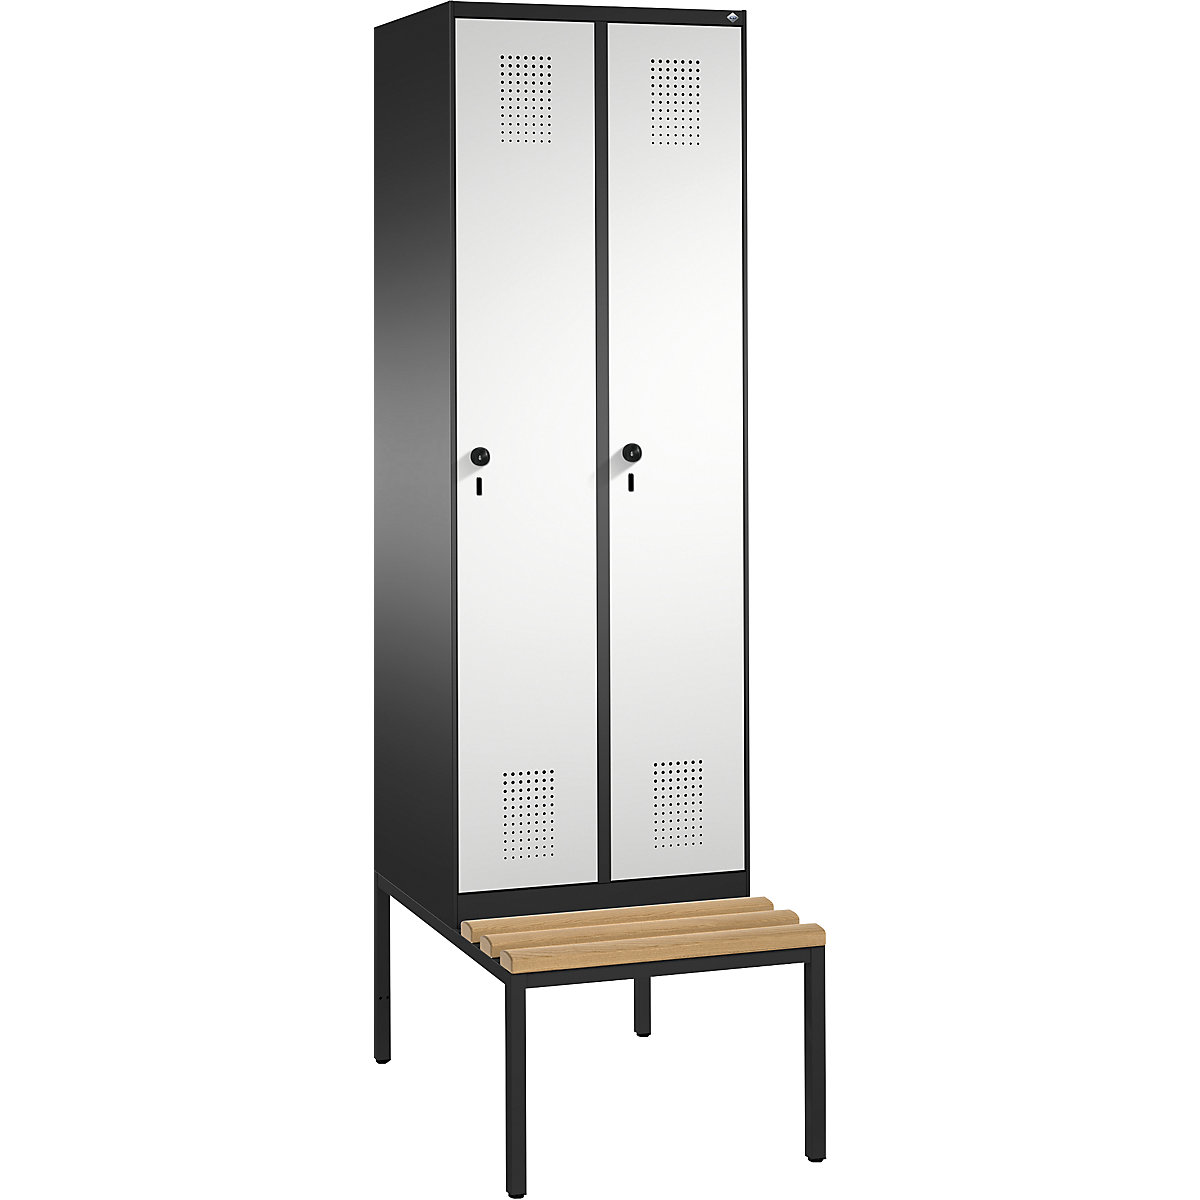 Garderobna omara EVOLO, s klopjo – C+P, 2 razdelka, širina razdelka 300 mm, črno siva / svetlo siva-7